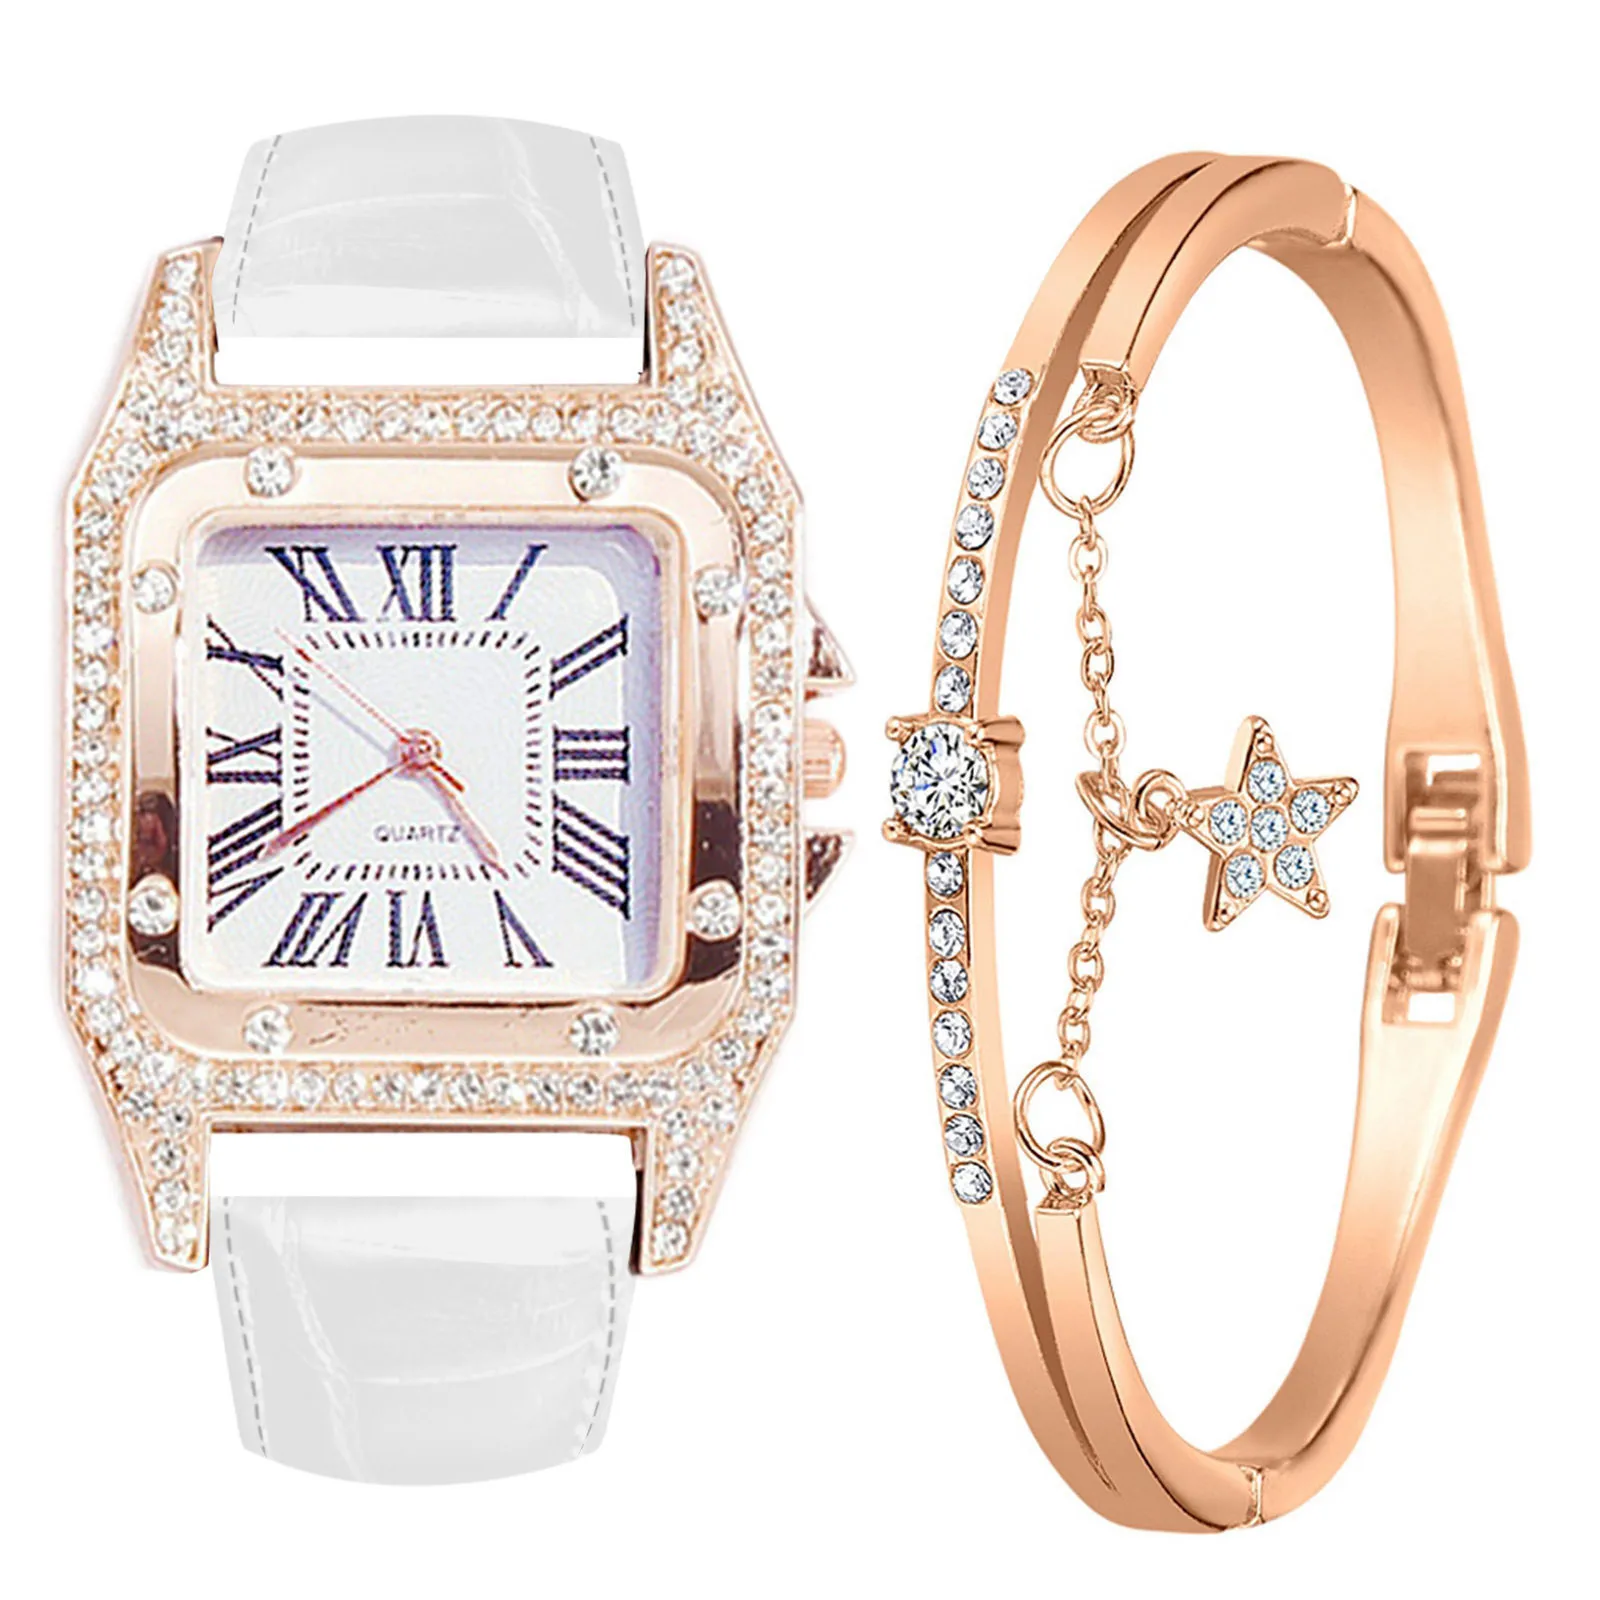 

Ladies Strap, Square Dial, Diamond and Star Bracelet Quartz Watch Set montre femme luxe de marque montre femme acier inoxydable